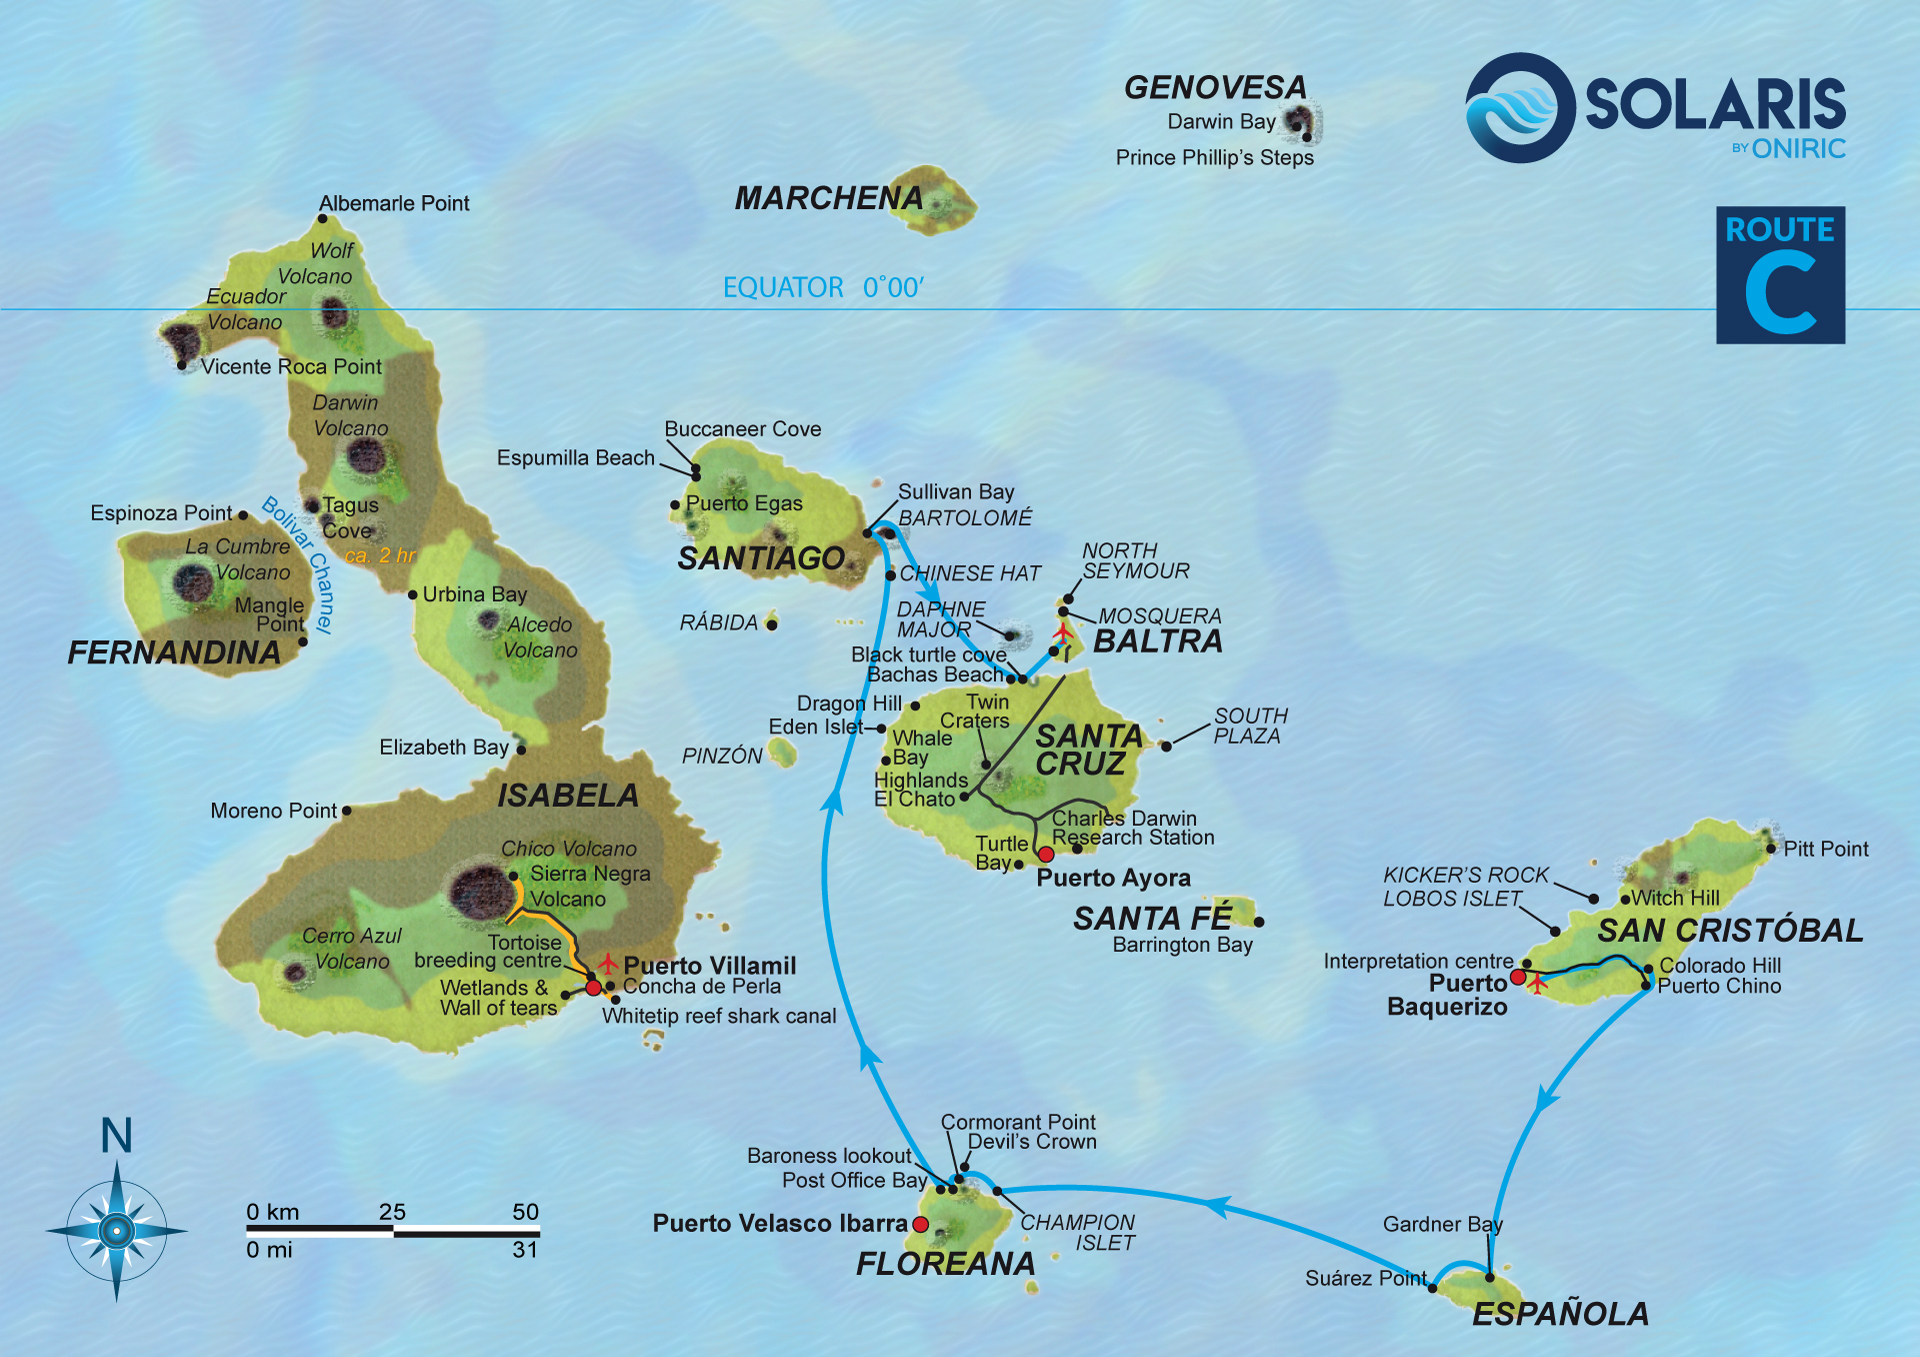 route-C-Galapagos-islands-Solaris